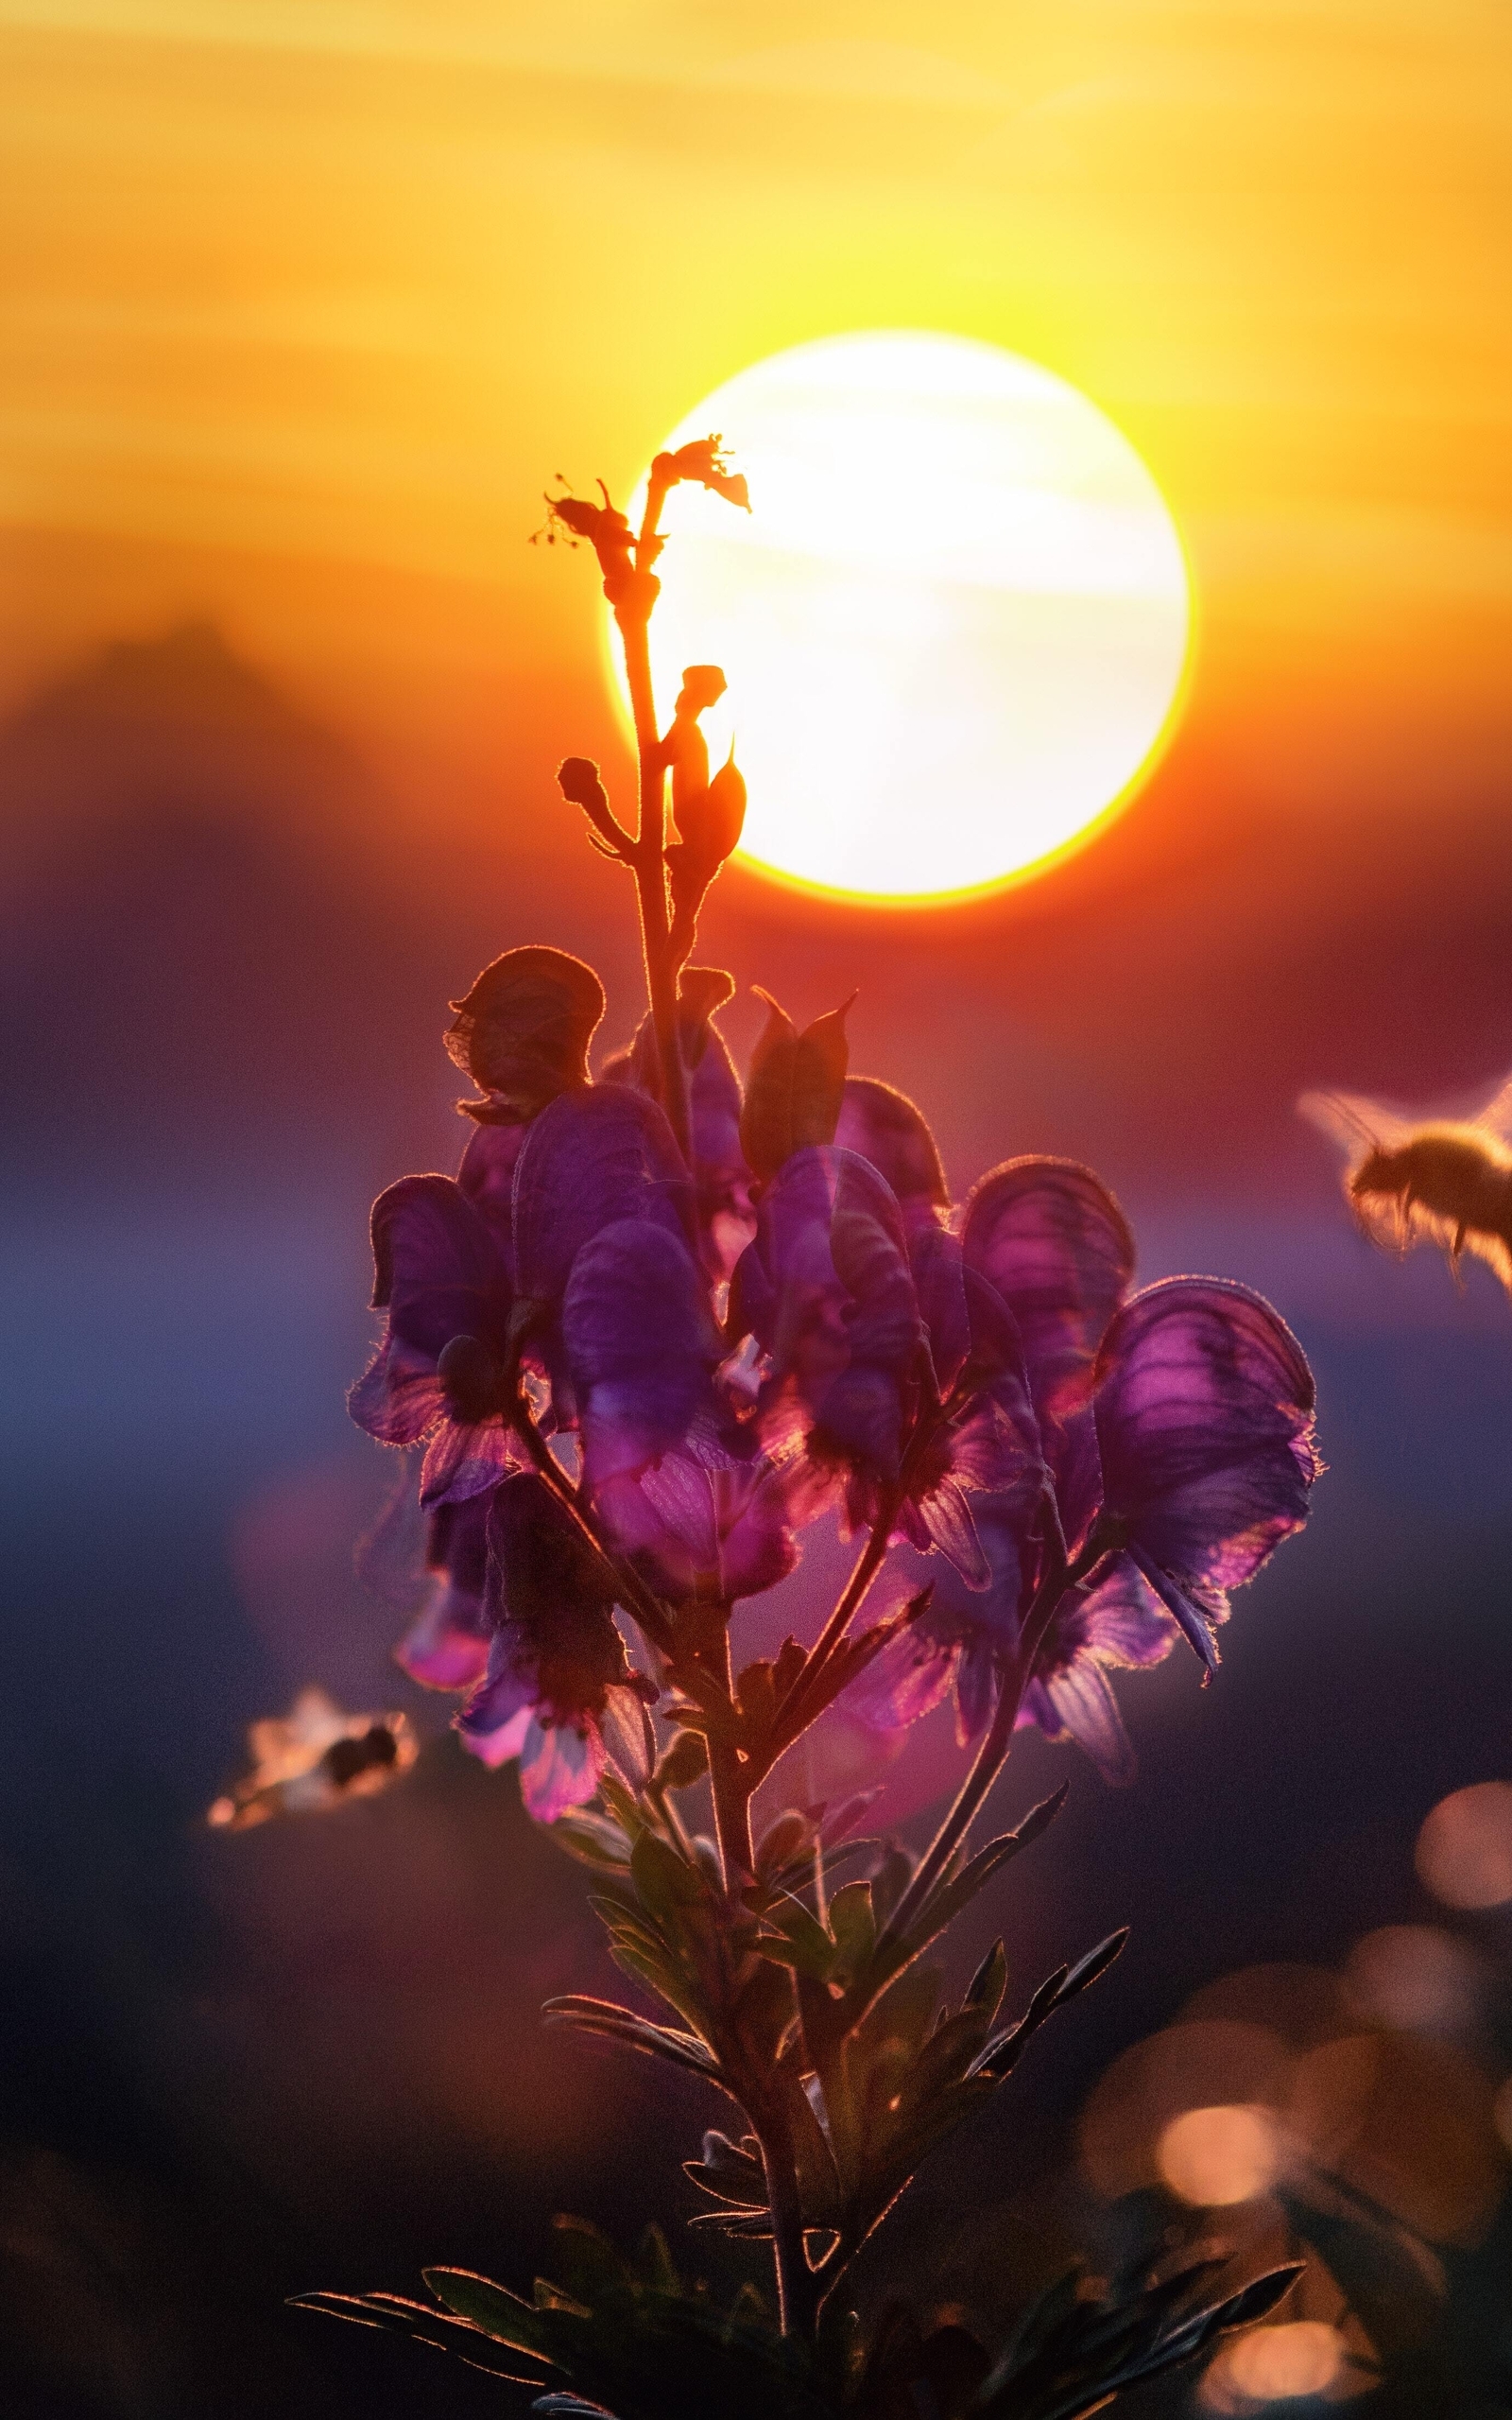 Картинка: Пчела, цветок, солнце, закат, блики, размытость